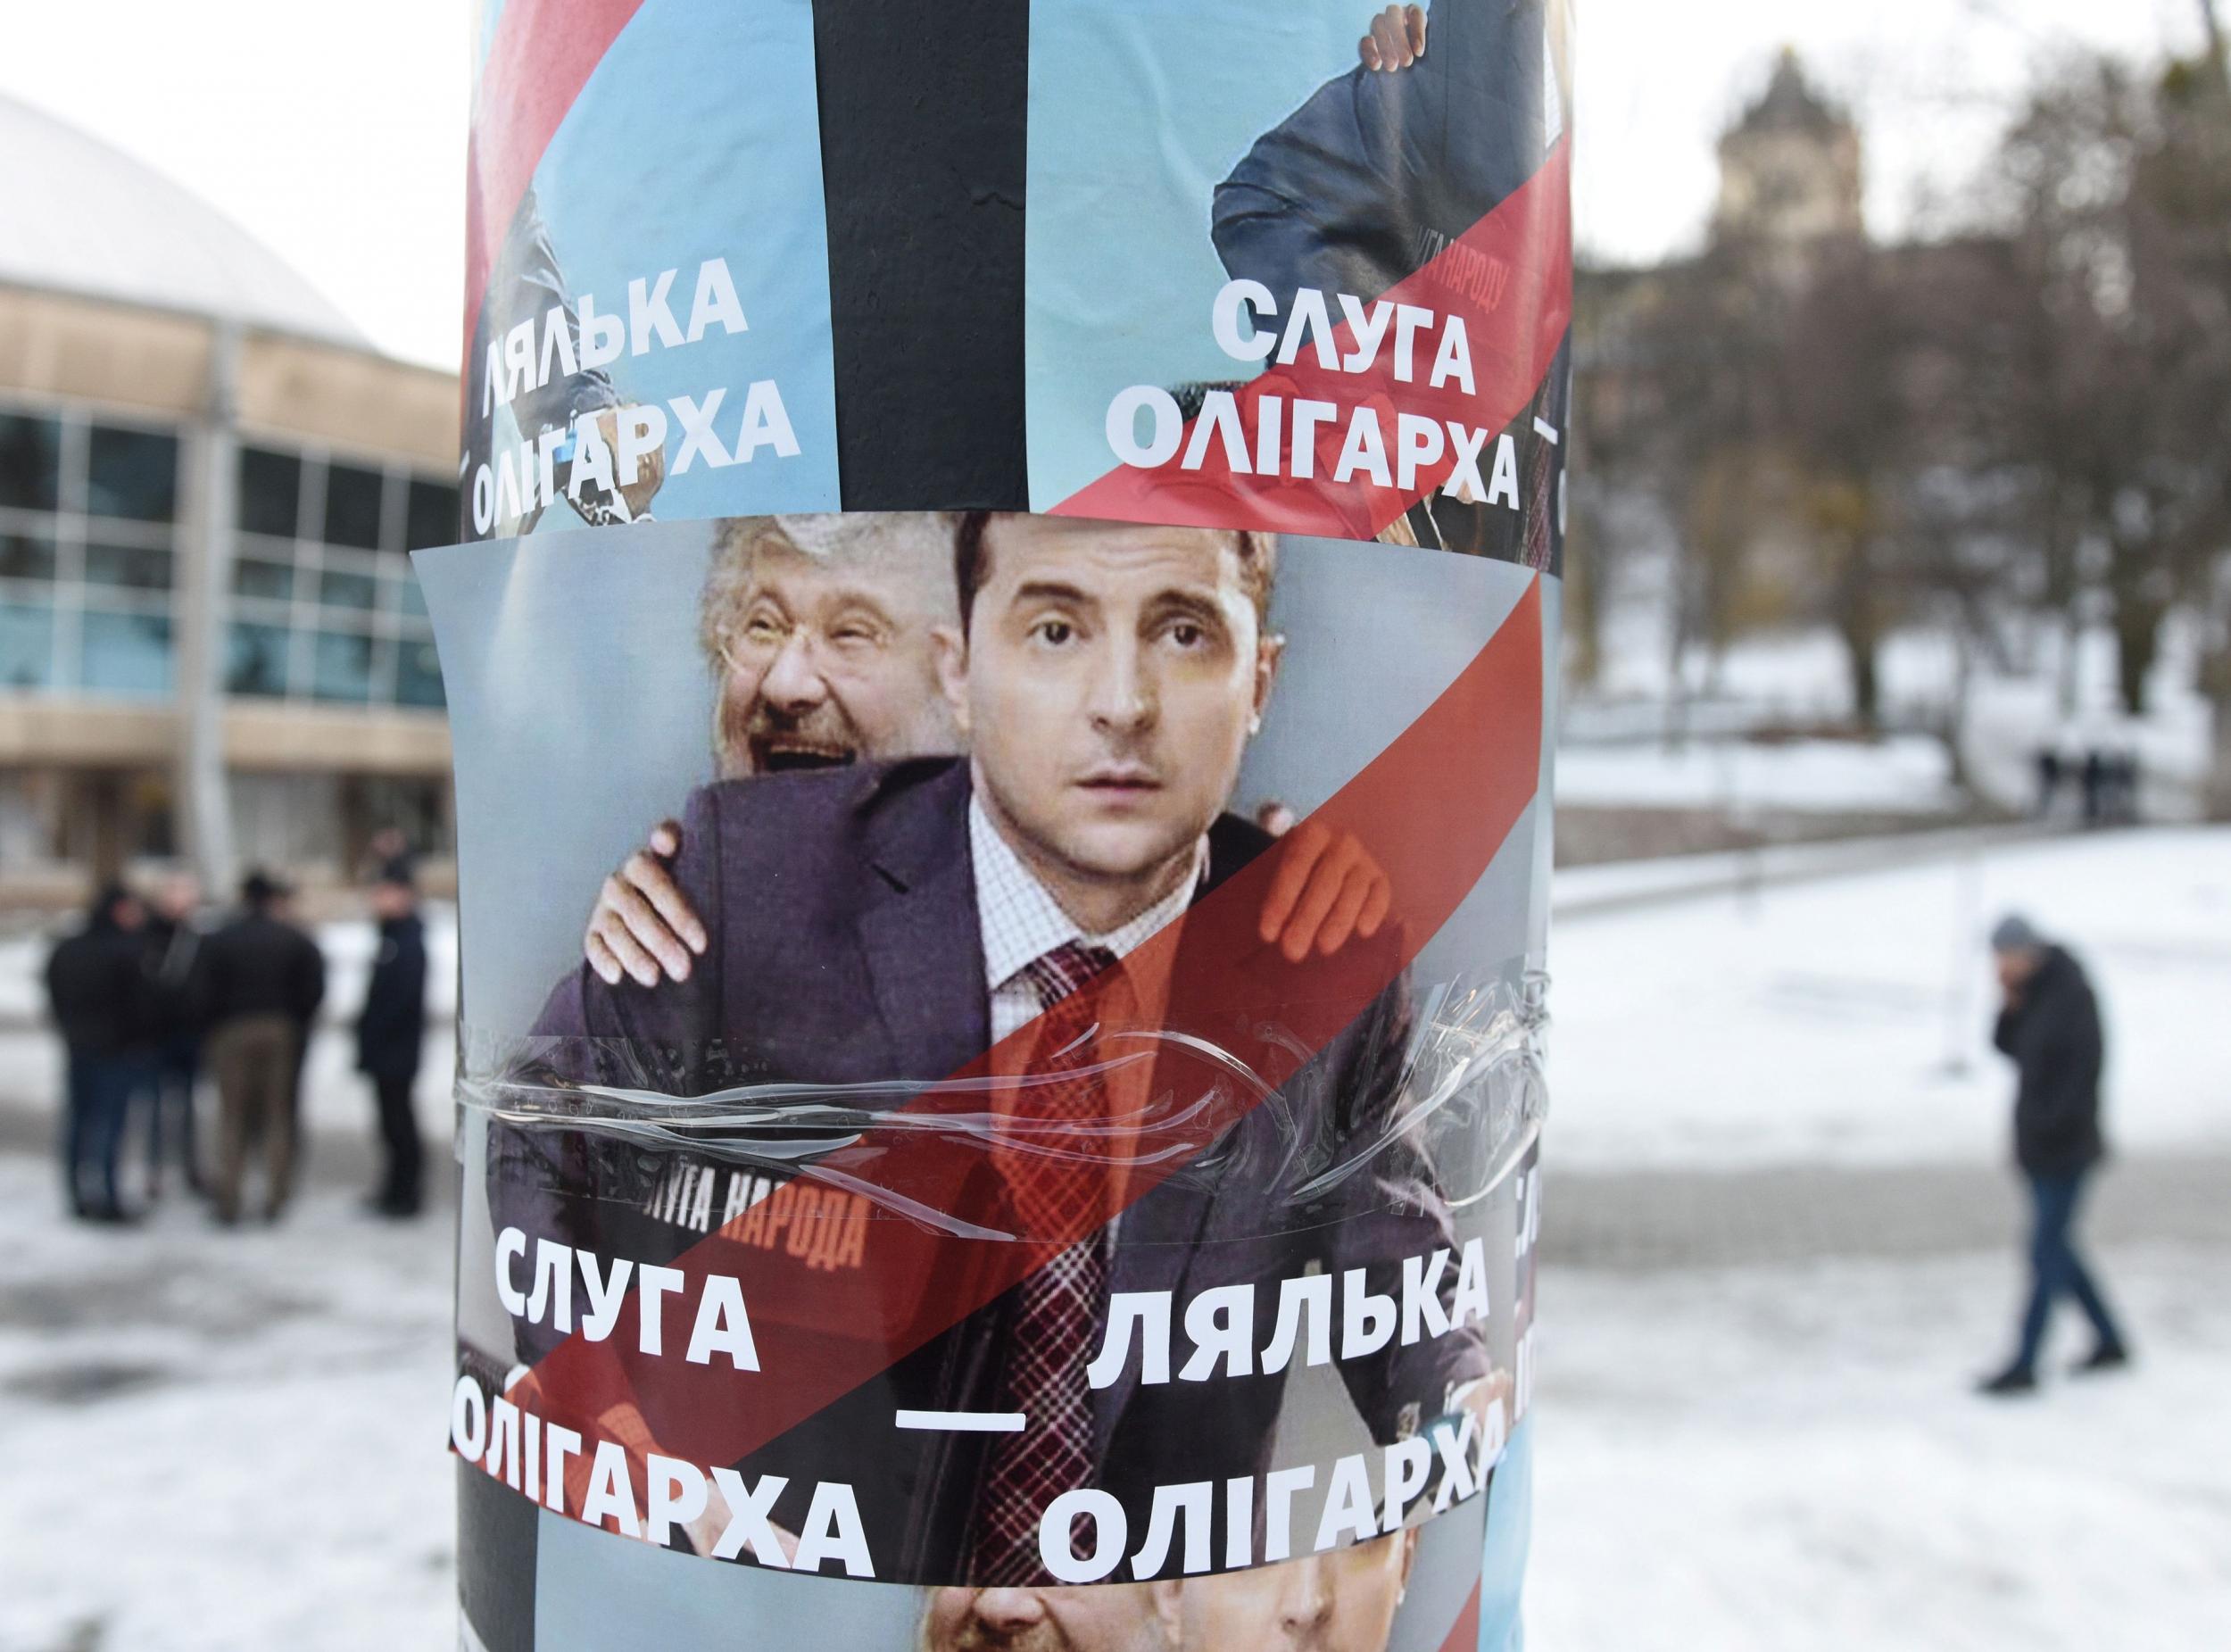 Vladimir Zelensky and oligarch Ihor Kolomoisky appear on a campaign poster